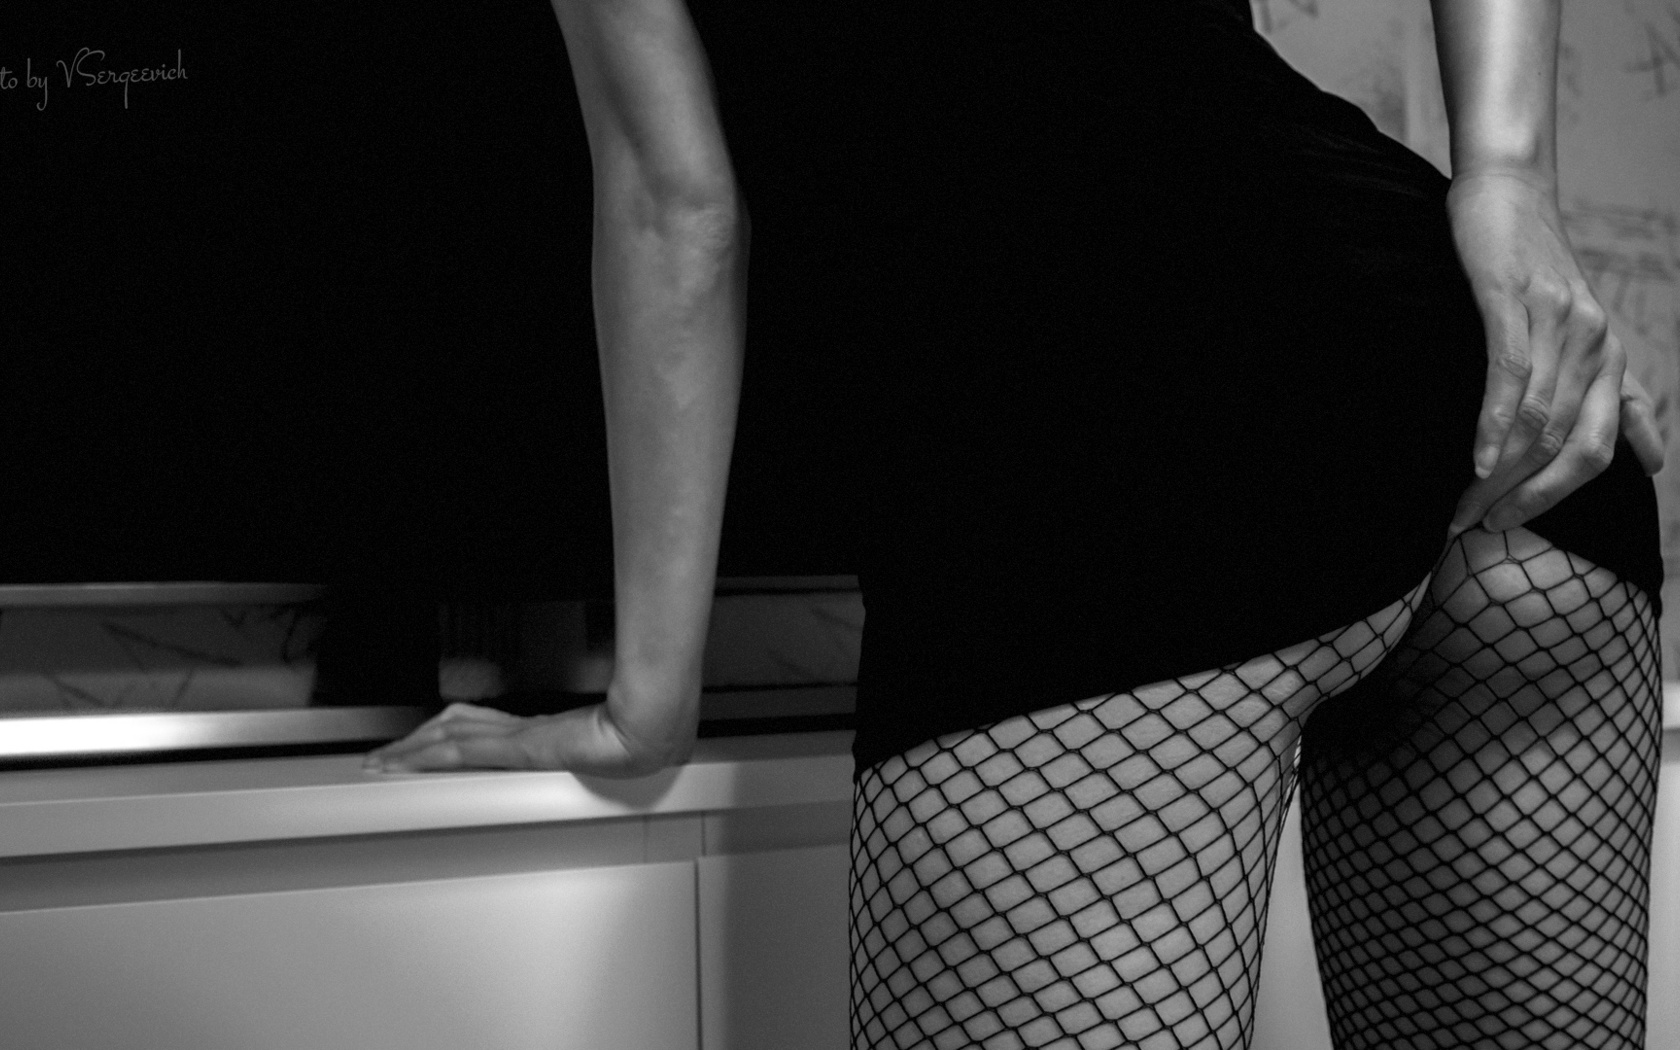 фото женские попки в колготках, откровенные фото анкеты проституток | Ziretnfy's Blog